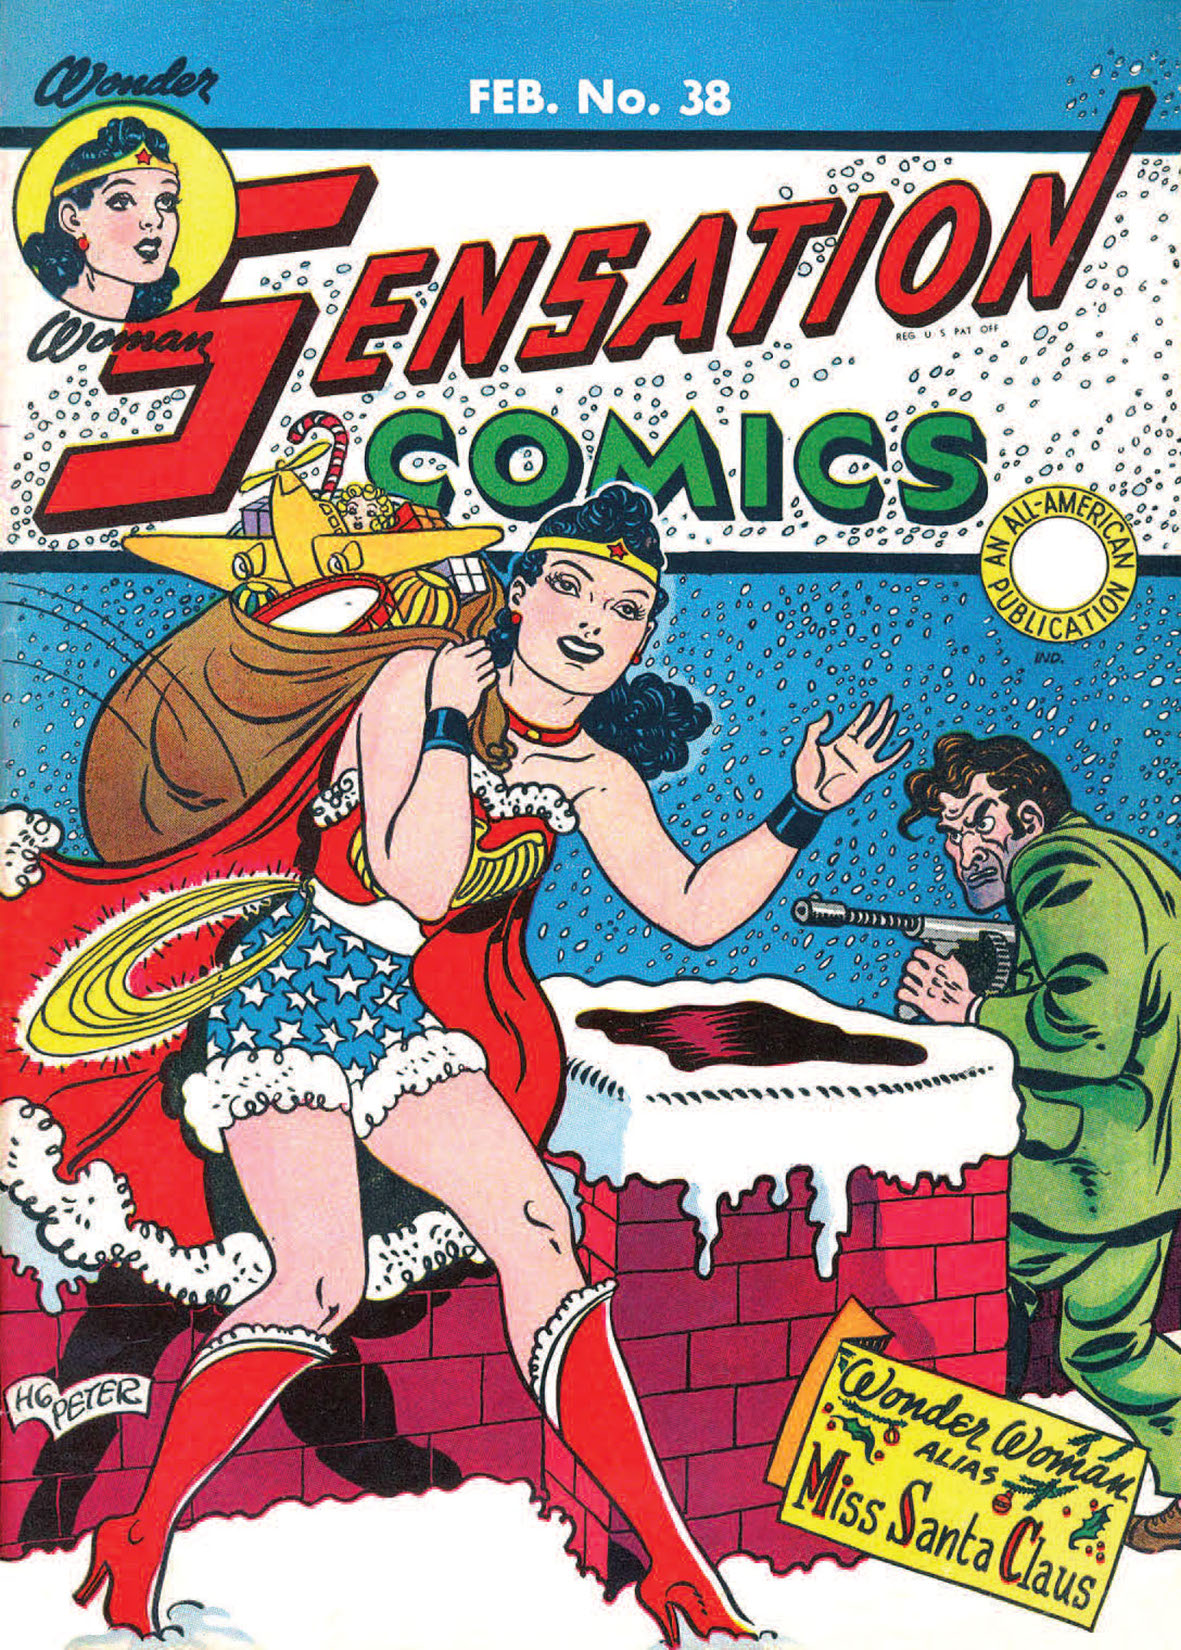 Sensation Comics #38 preview images